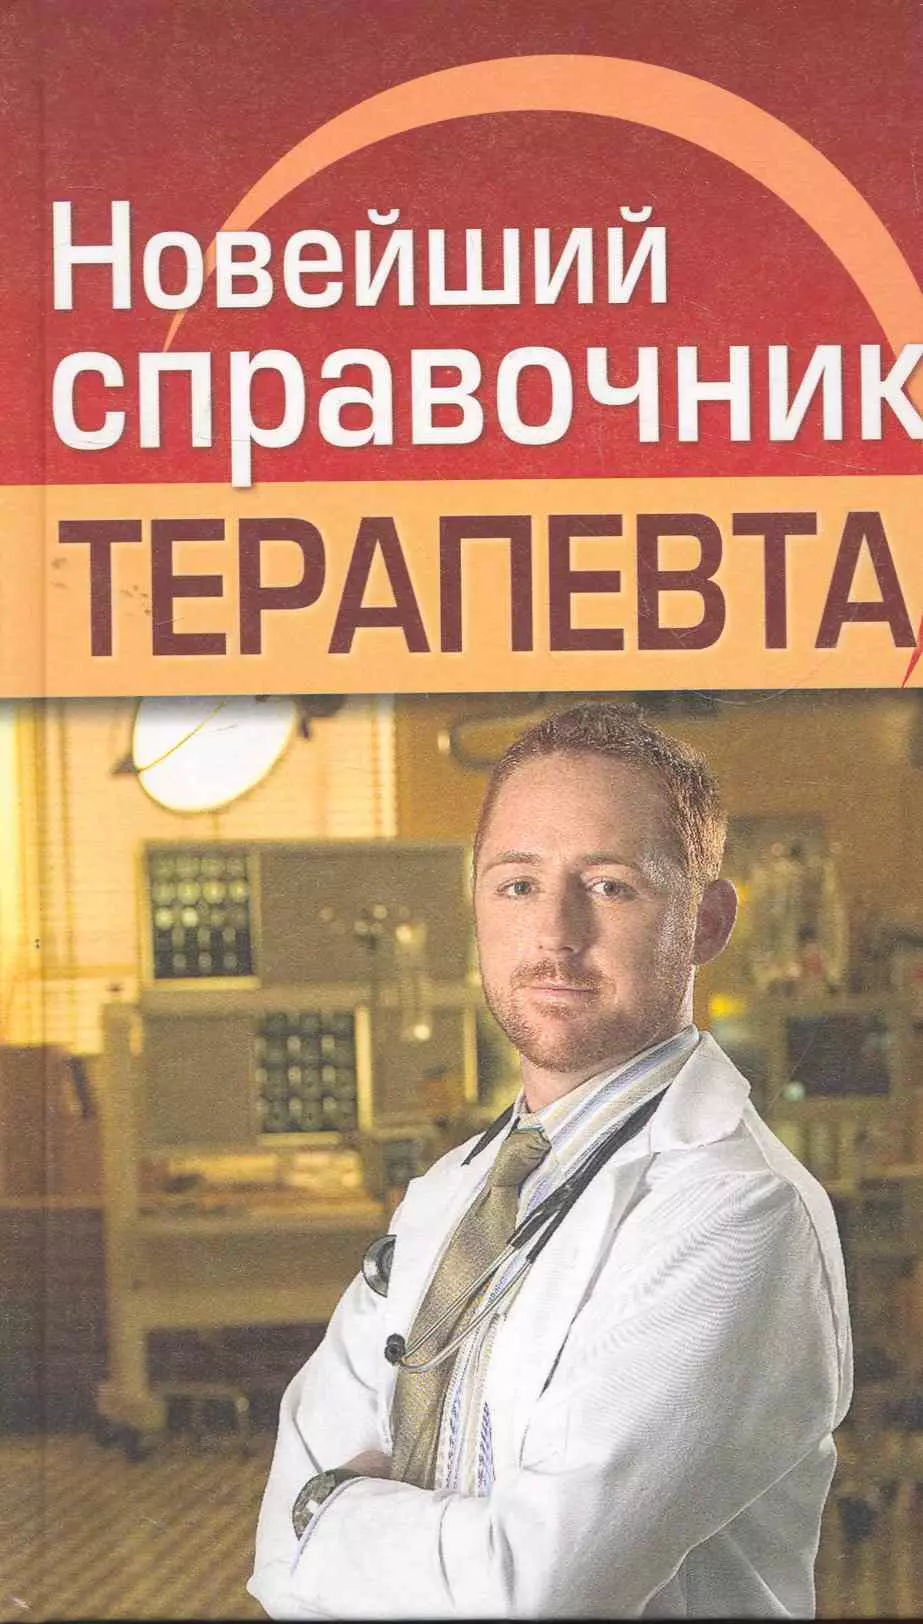 Николаев Евгений Алексеевич - Новейший справочник терапевта